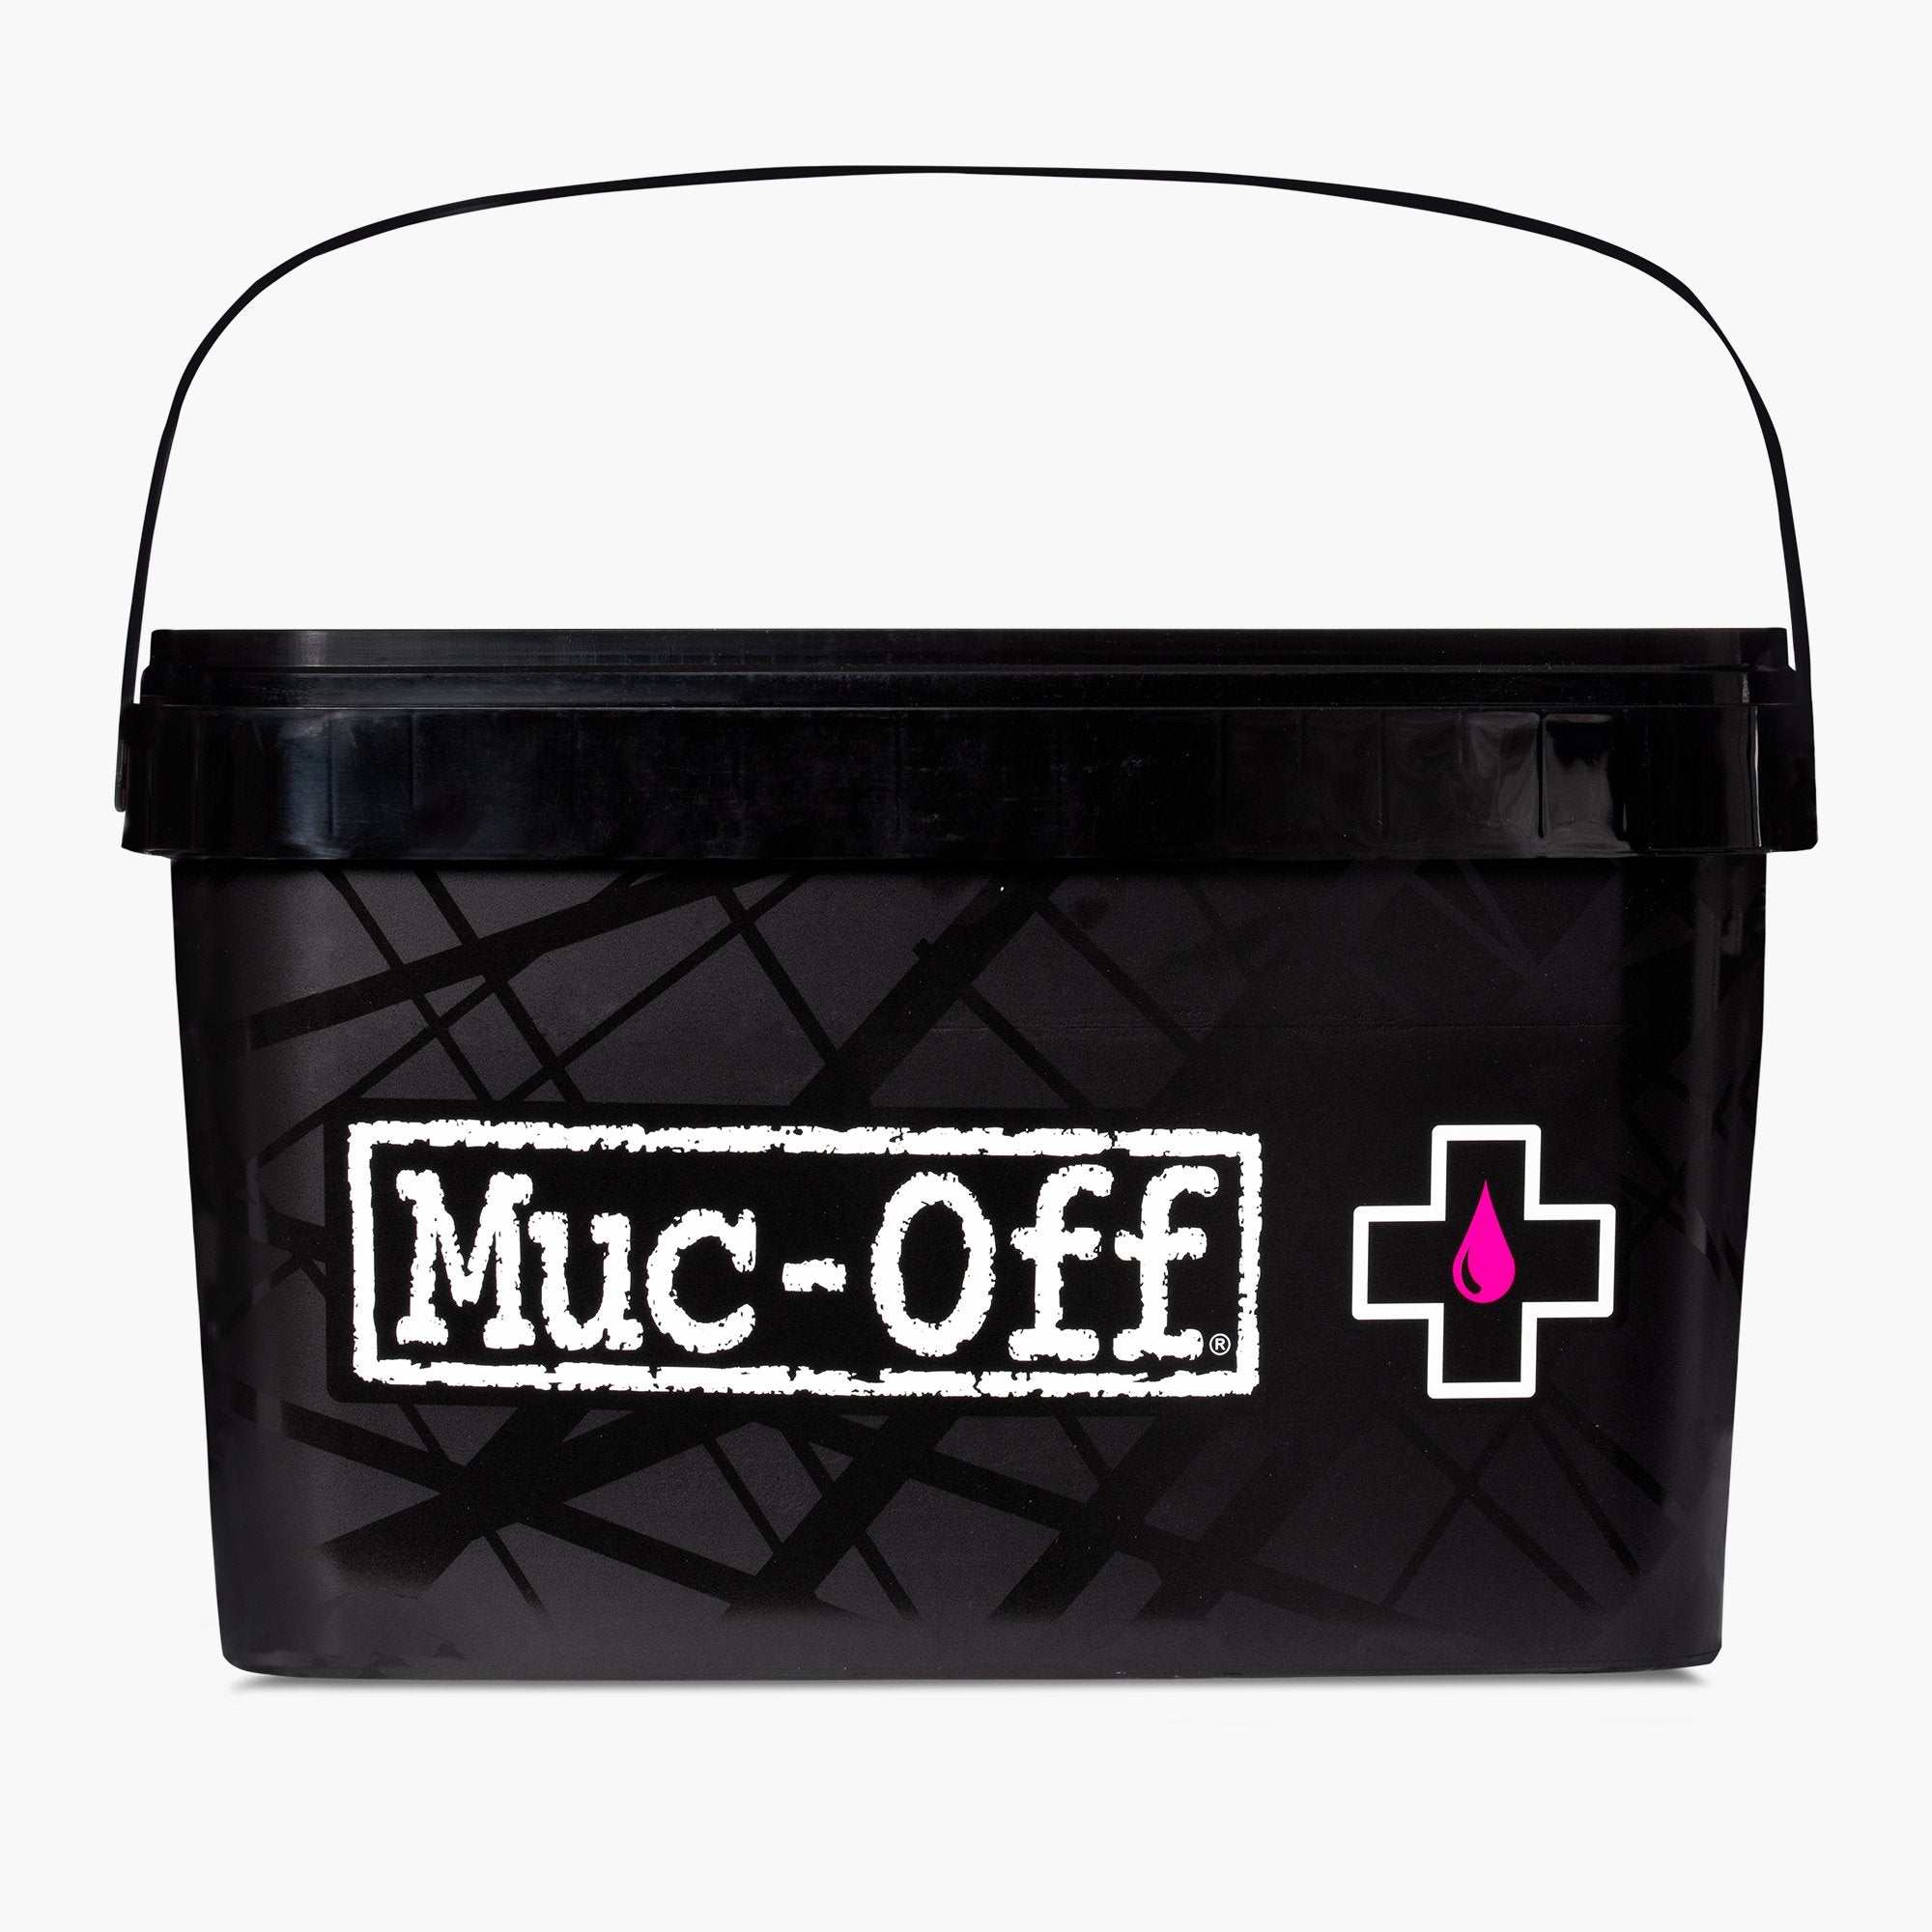 Malette Muc-Off Ultimate Kit de Nettoyage Moto 9 Pièces